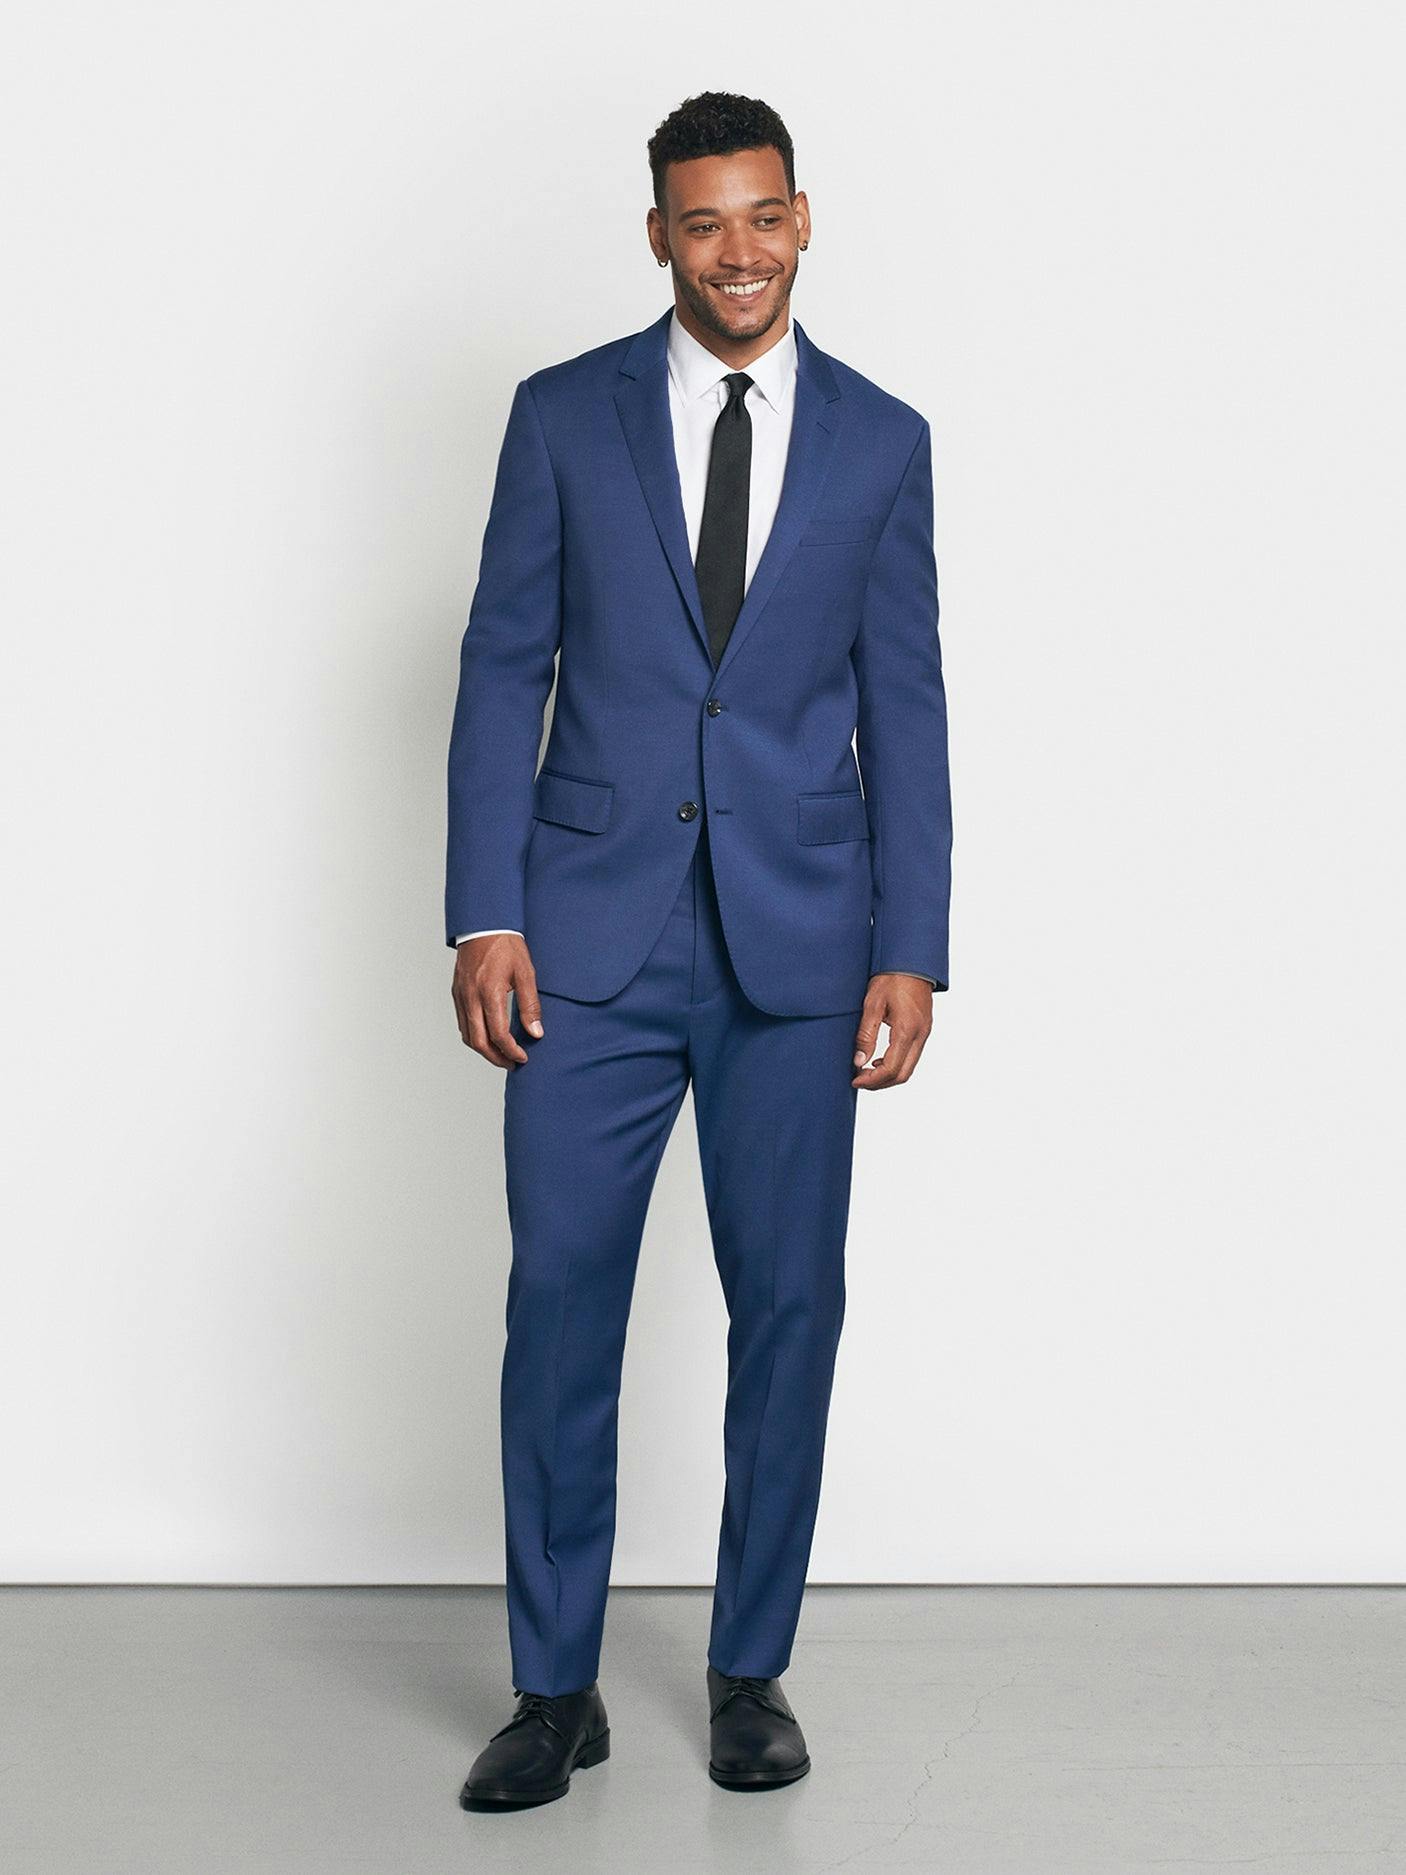 Medium Blue Suit